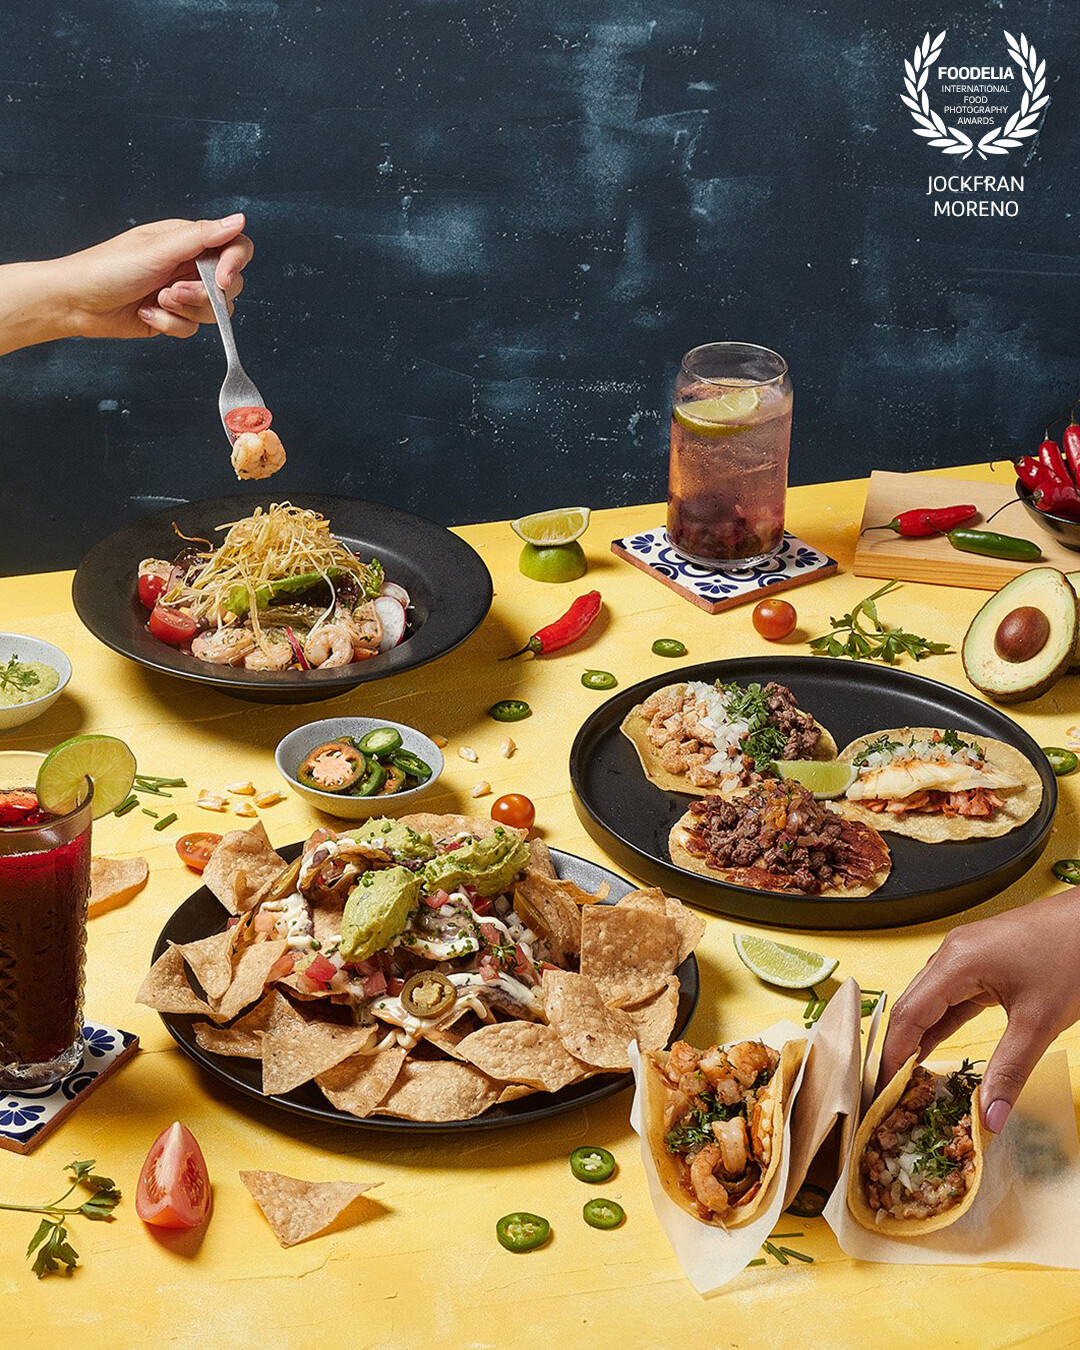 Esta fotografia se realizó para el nuevo menú del Restaurante de Comida Mexicana @DonBenitez quisimos generar la armonia y calidez de la comida mexicana, sus colores, cultura, ingredientes y bebidas.  Una jornada bien gratificante, y estamos muy felices de este resultado.